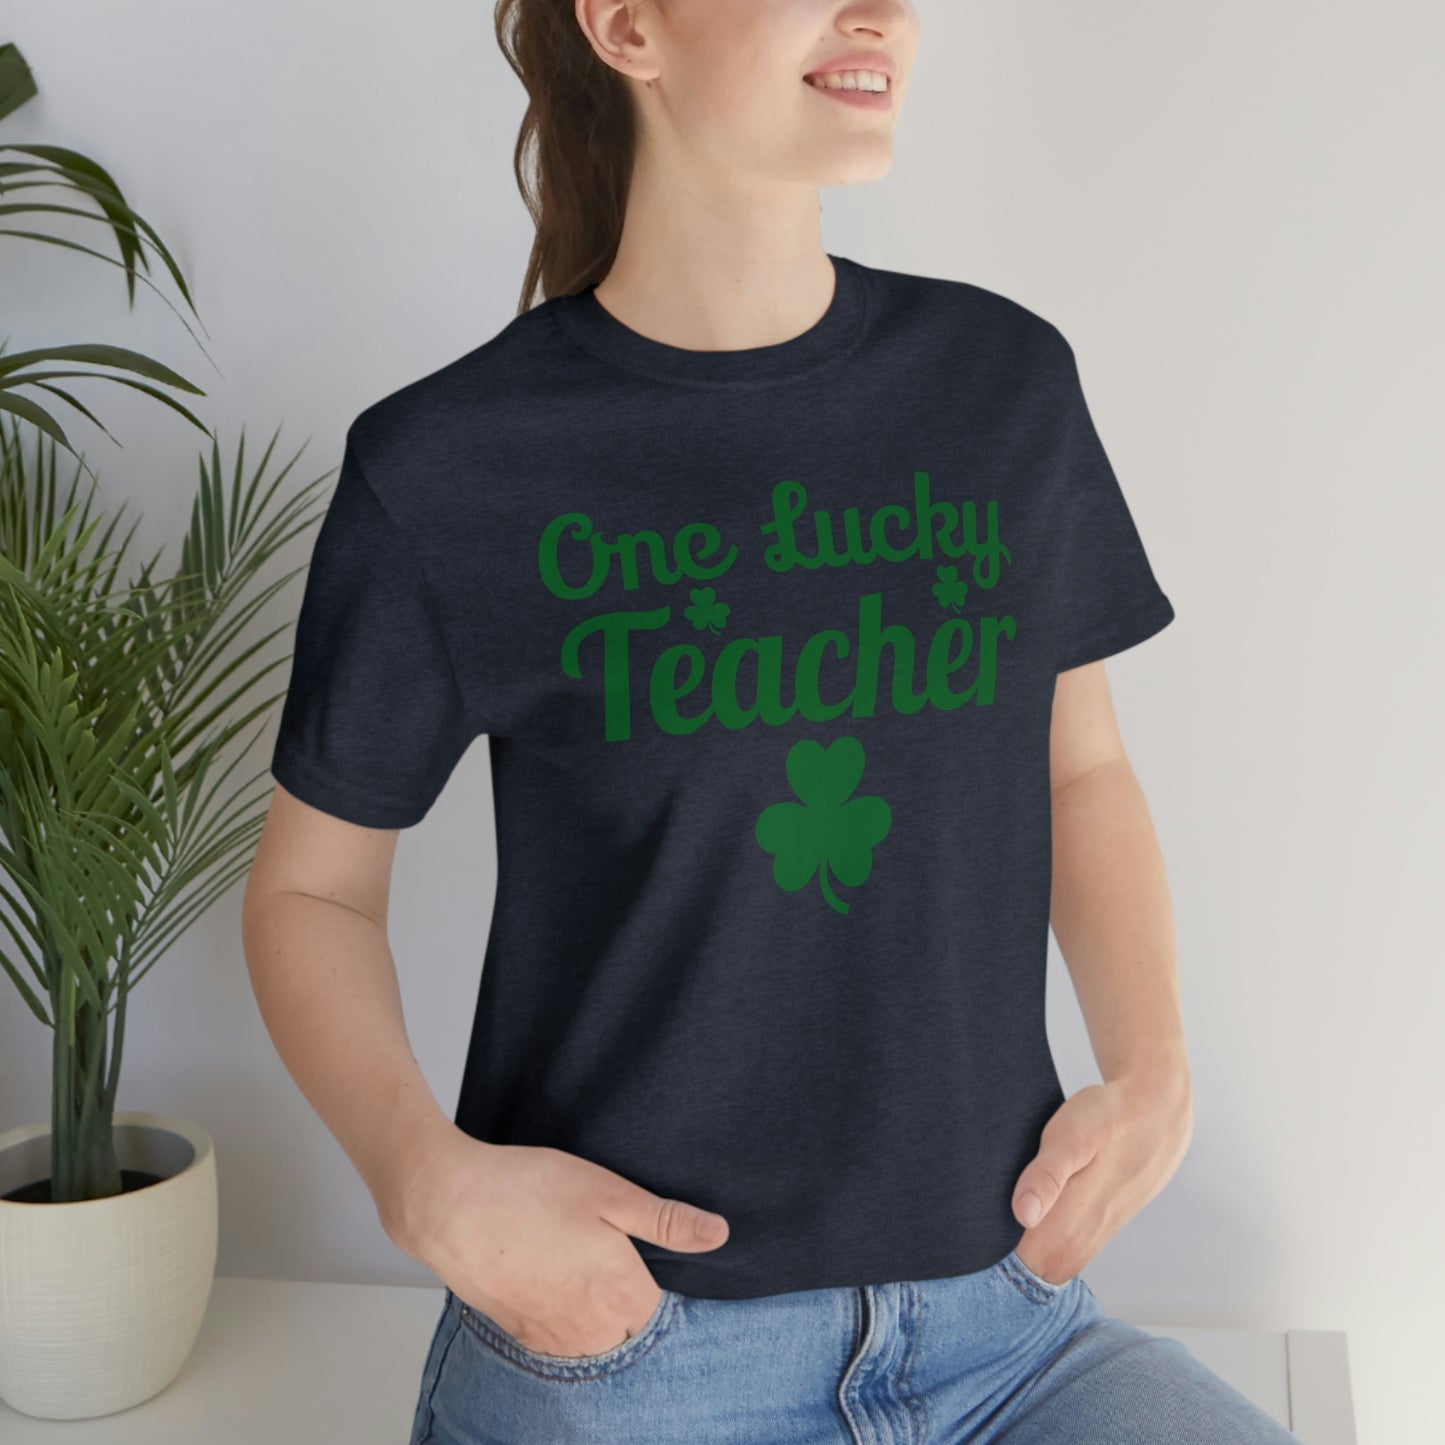 One Lucky Teacher Shirt feeling Lucky St Patrick's Day shirt - Funny St Paddy's day Funny Shirt